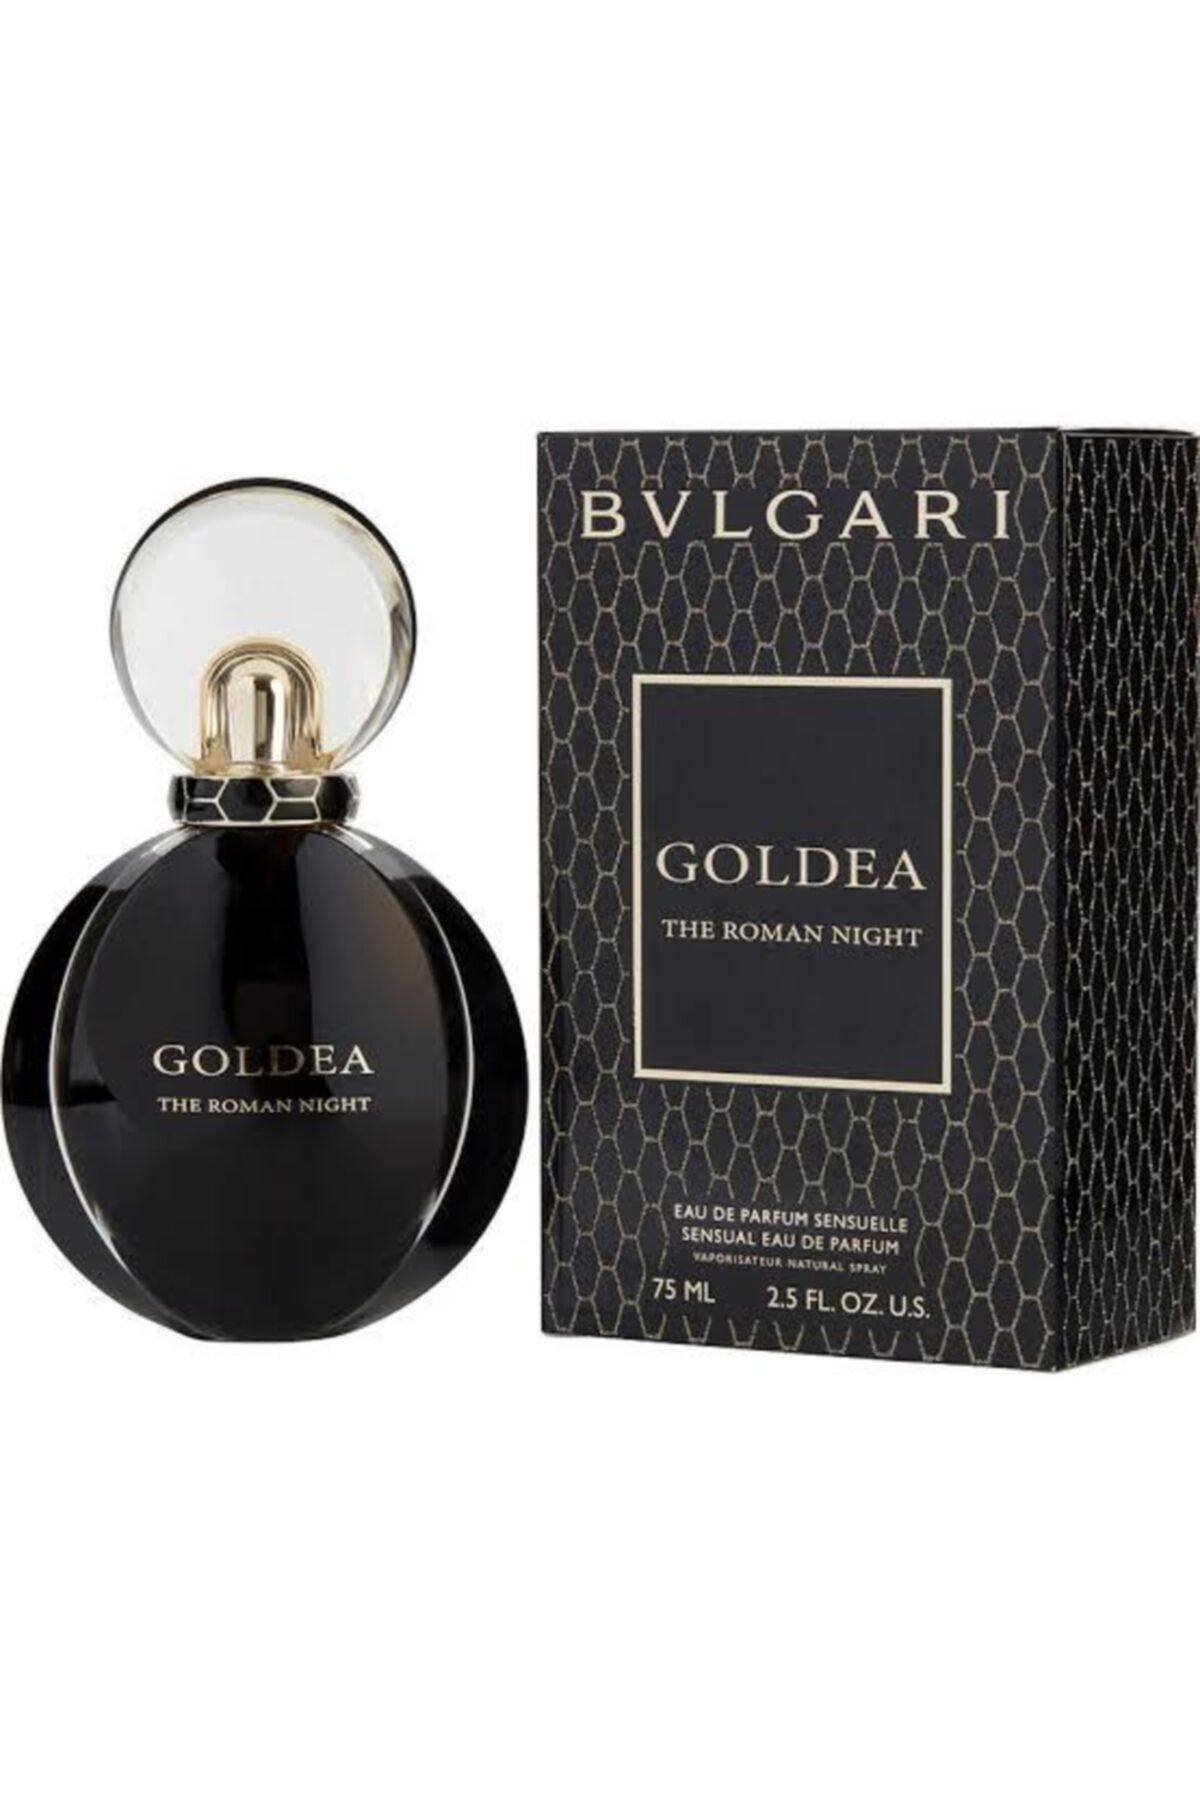 Bvlgari Goldea The Roman Night Edp 75 ml Kadın Parfüm 78332047915133